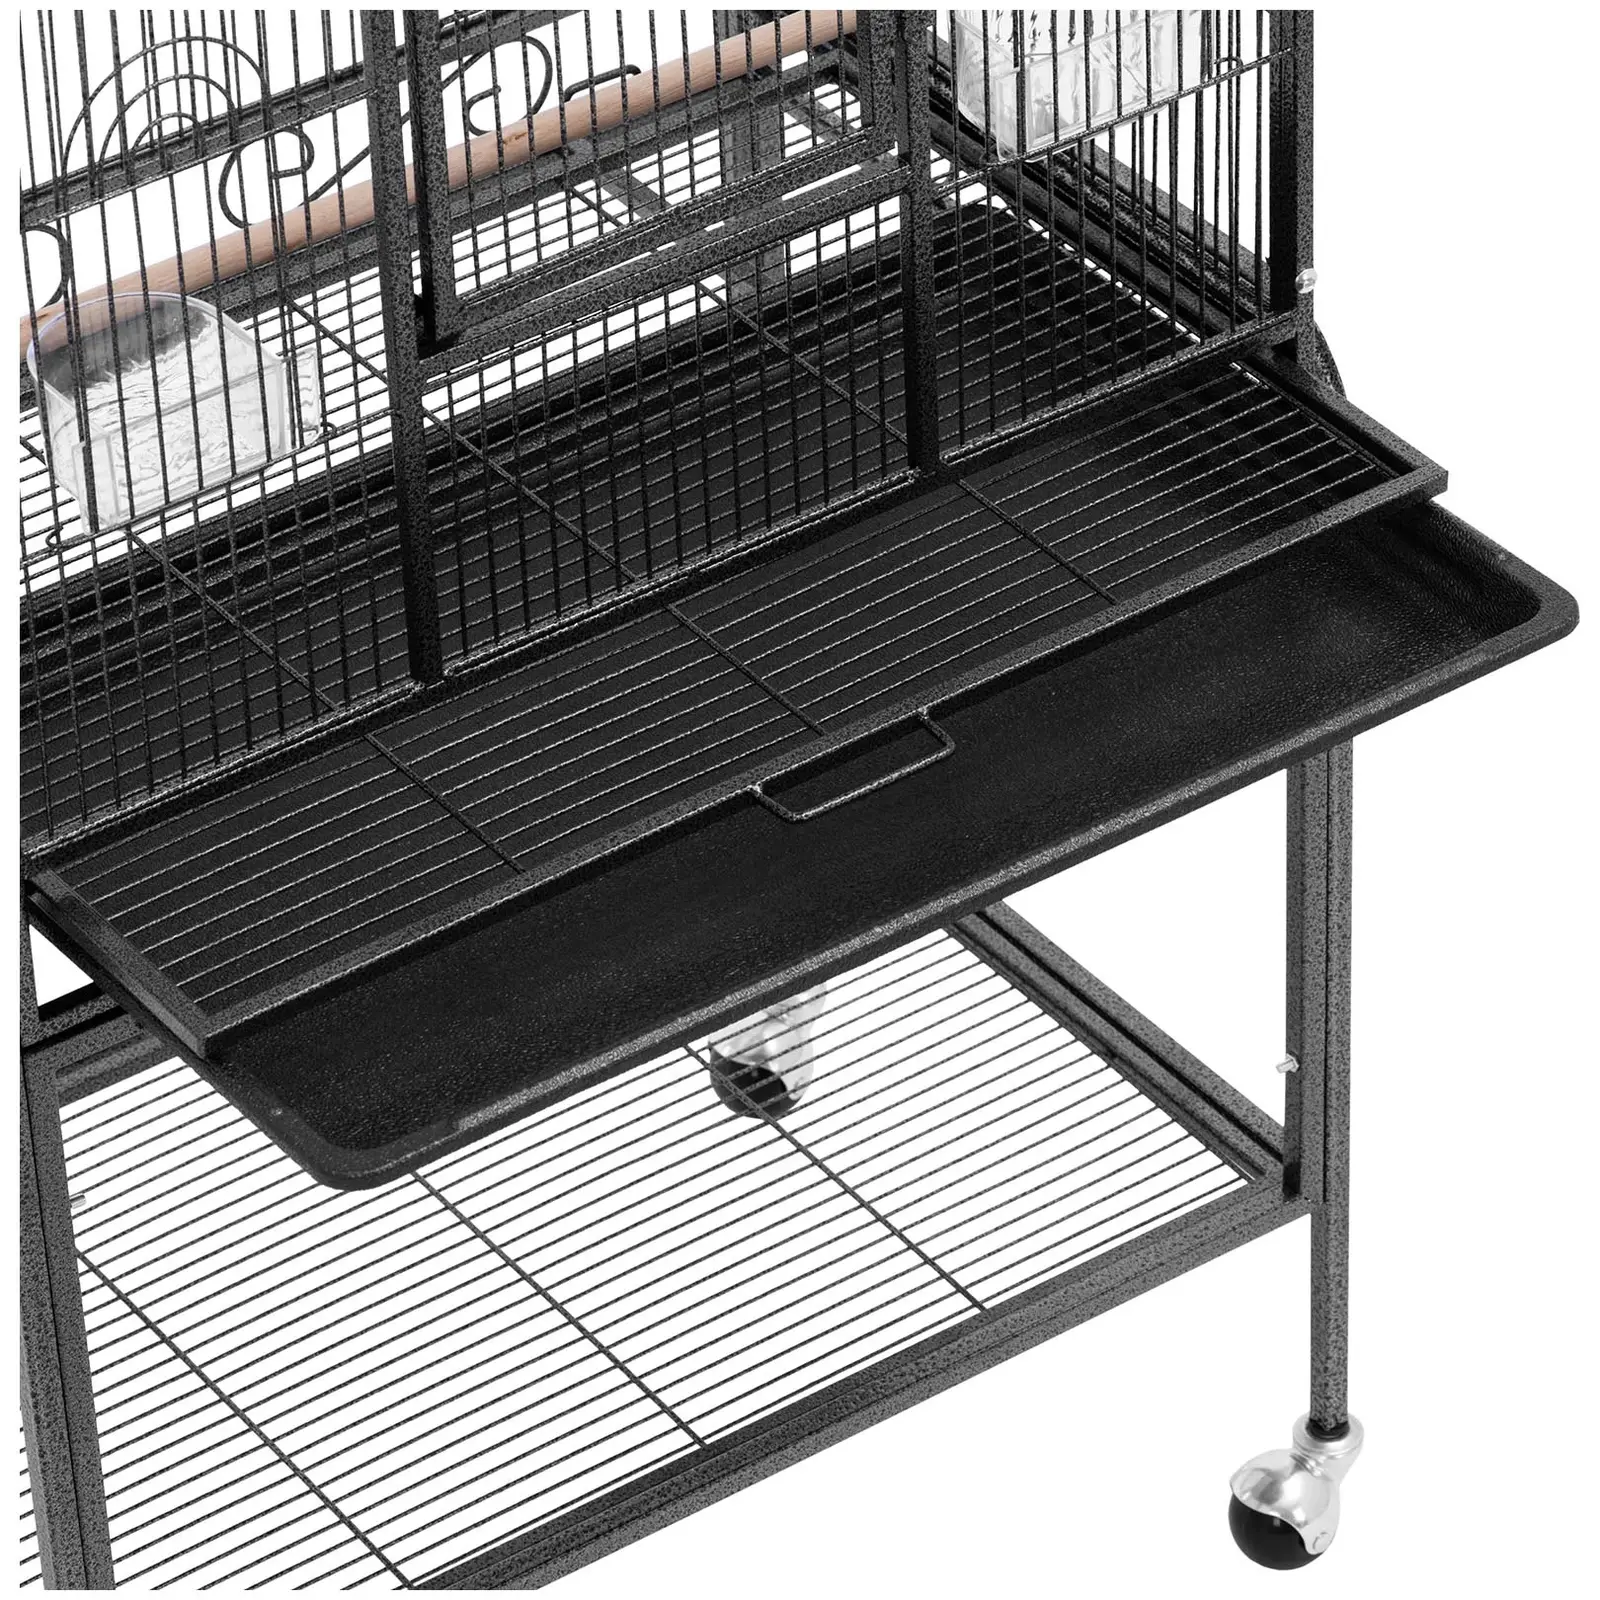 Cage à oiseaux sur roulettes - avec accessoires et étagère - dimensions globales : 65 x 43 x 135 cm